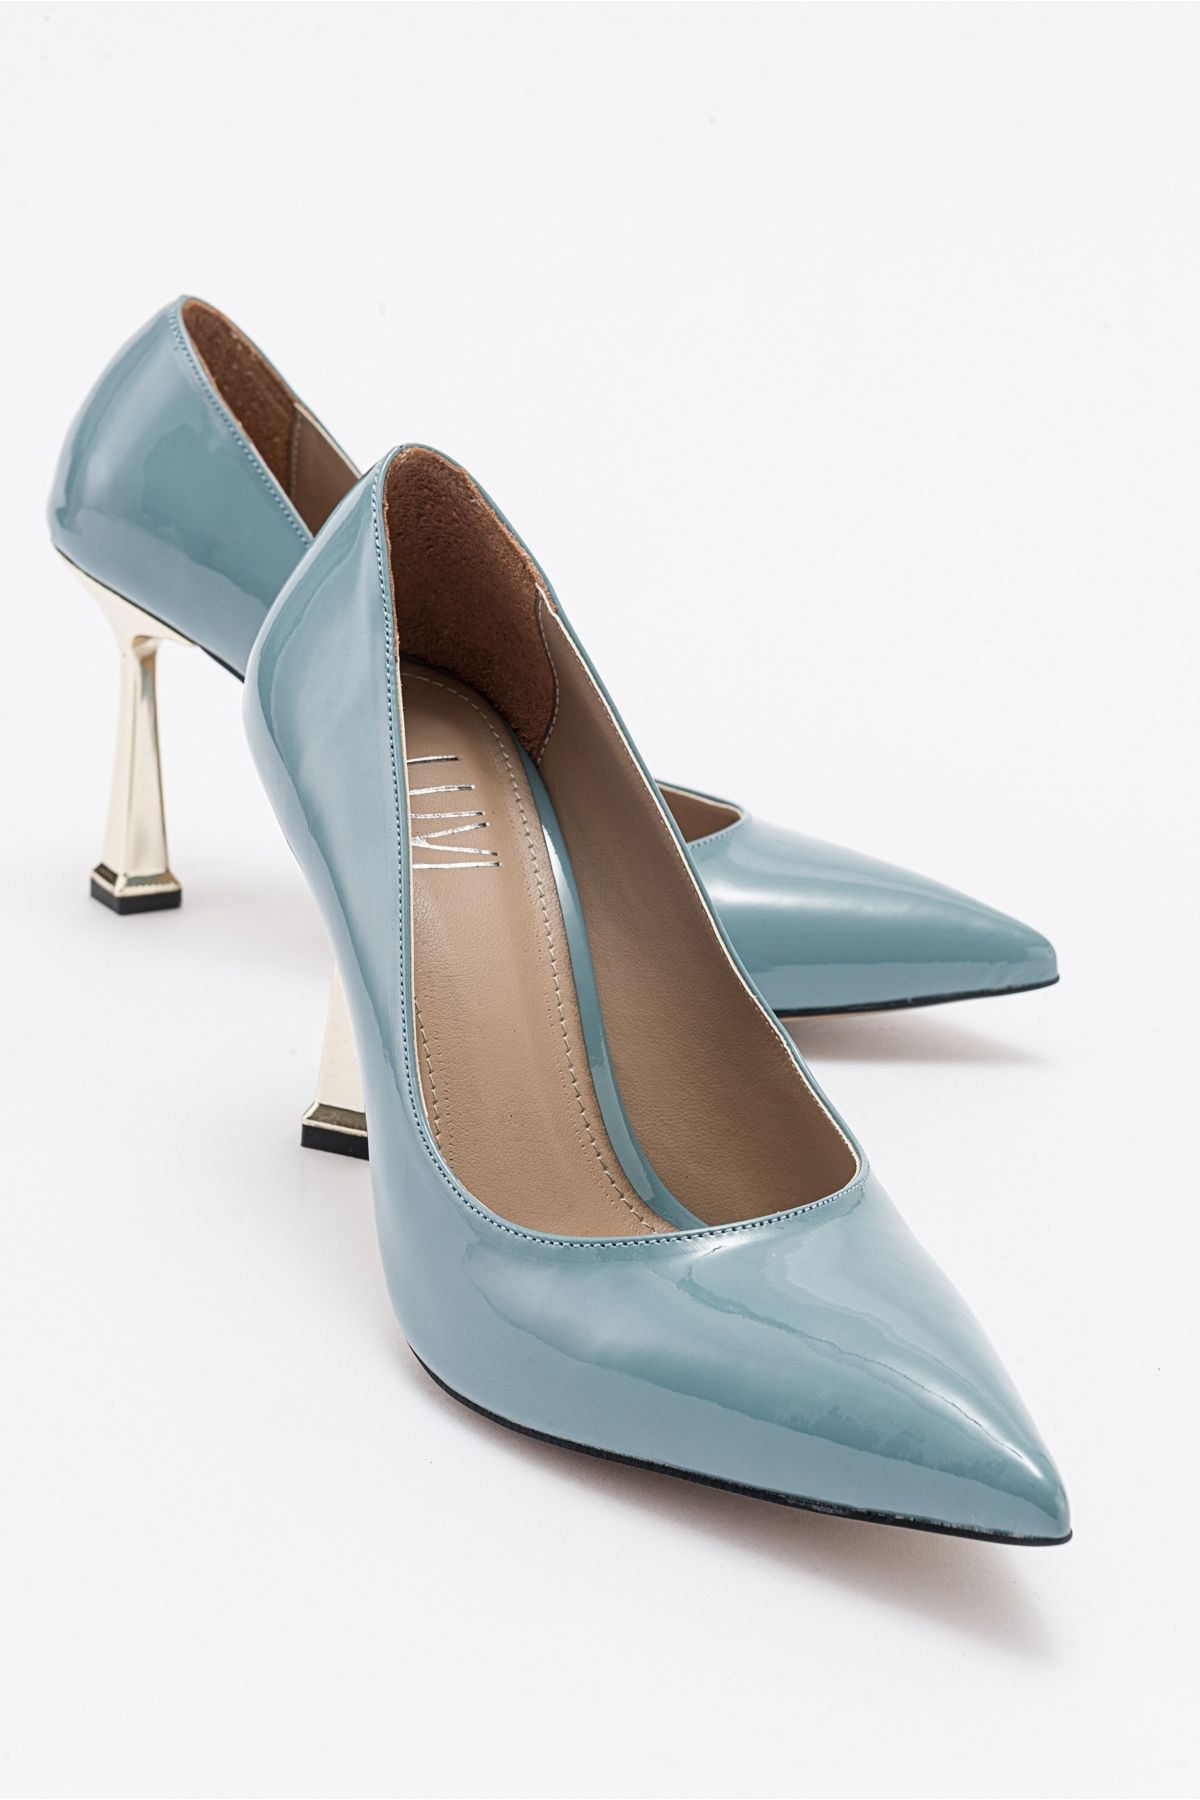 luvishoes MERLOT Mavi Kadın Topuklu Ayakkabı